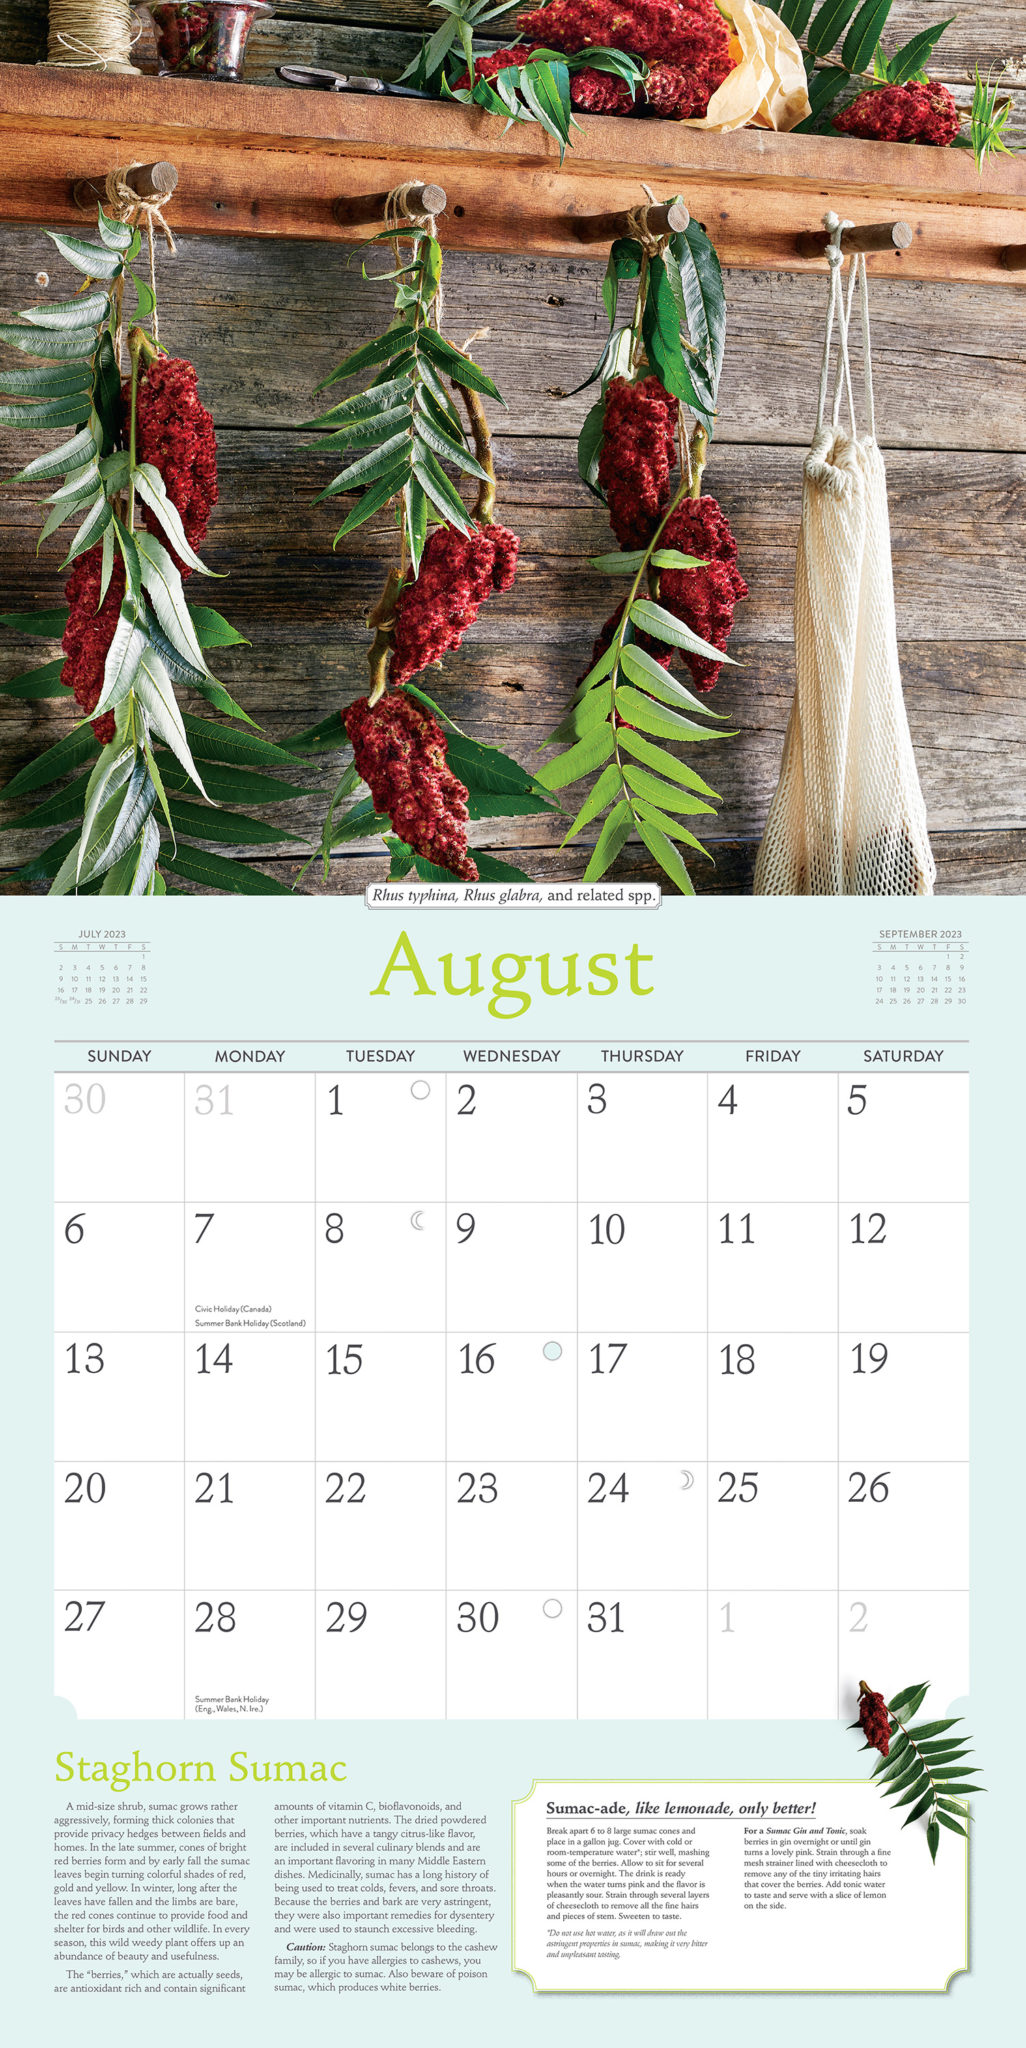 Rosemary Gladstar's 2023 Herbal Calendar The Science & Art of Herbalism